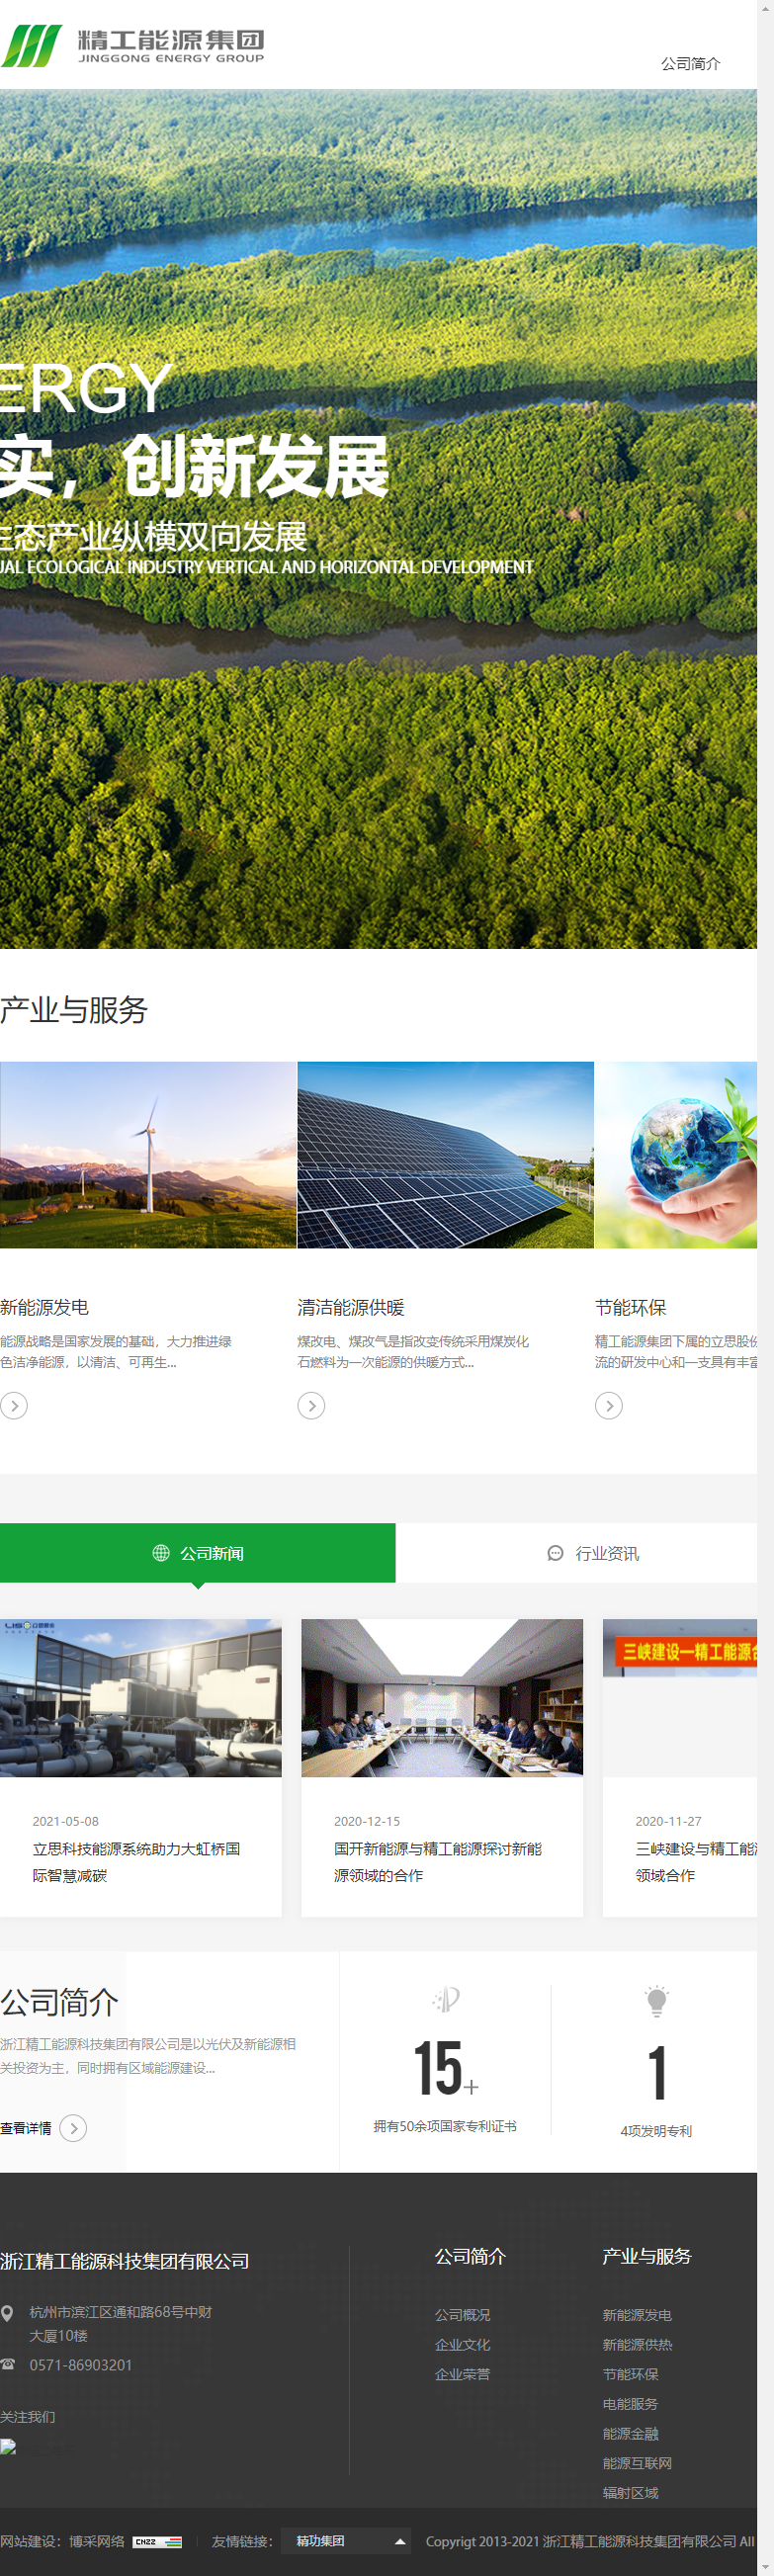 浙江精工能源科技集团有限公司网站案例